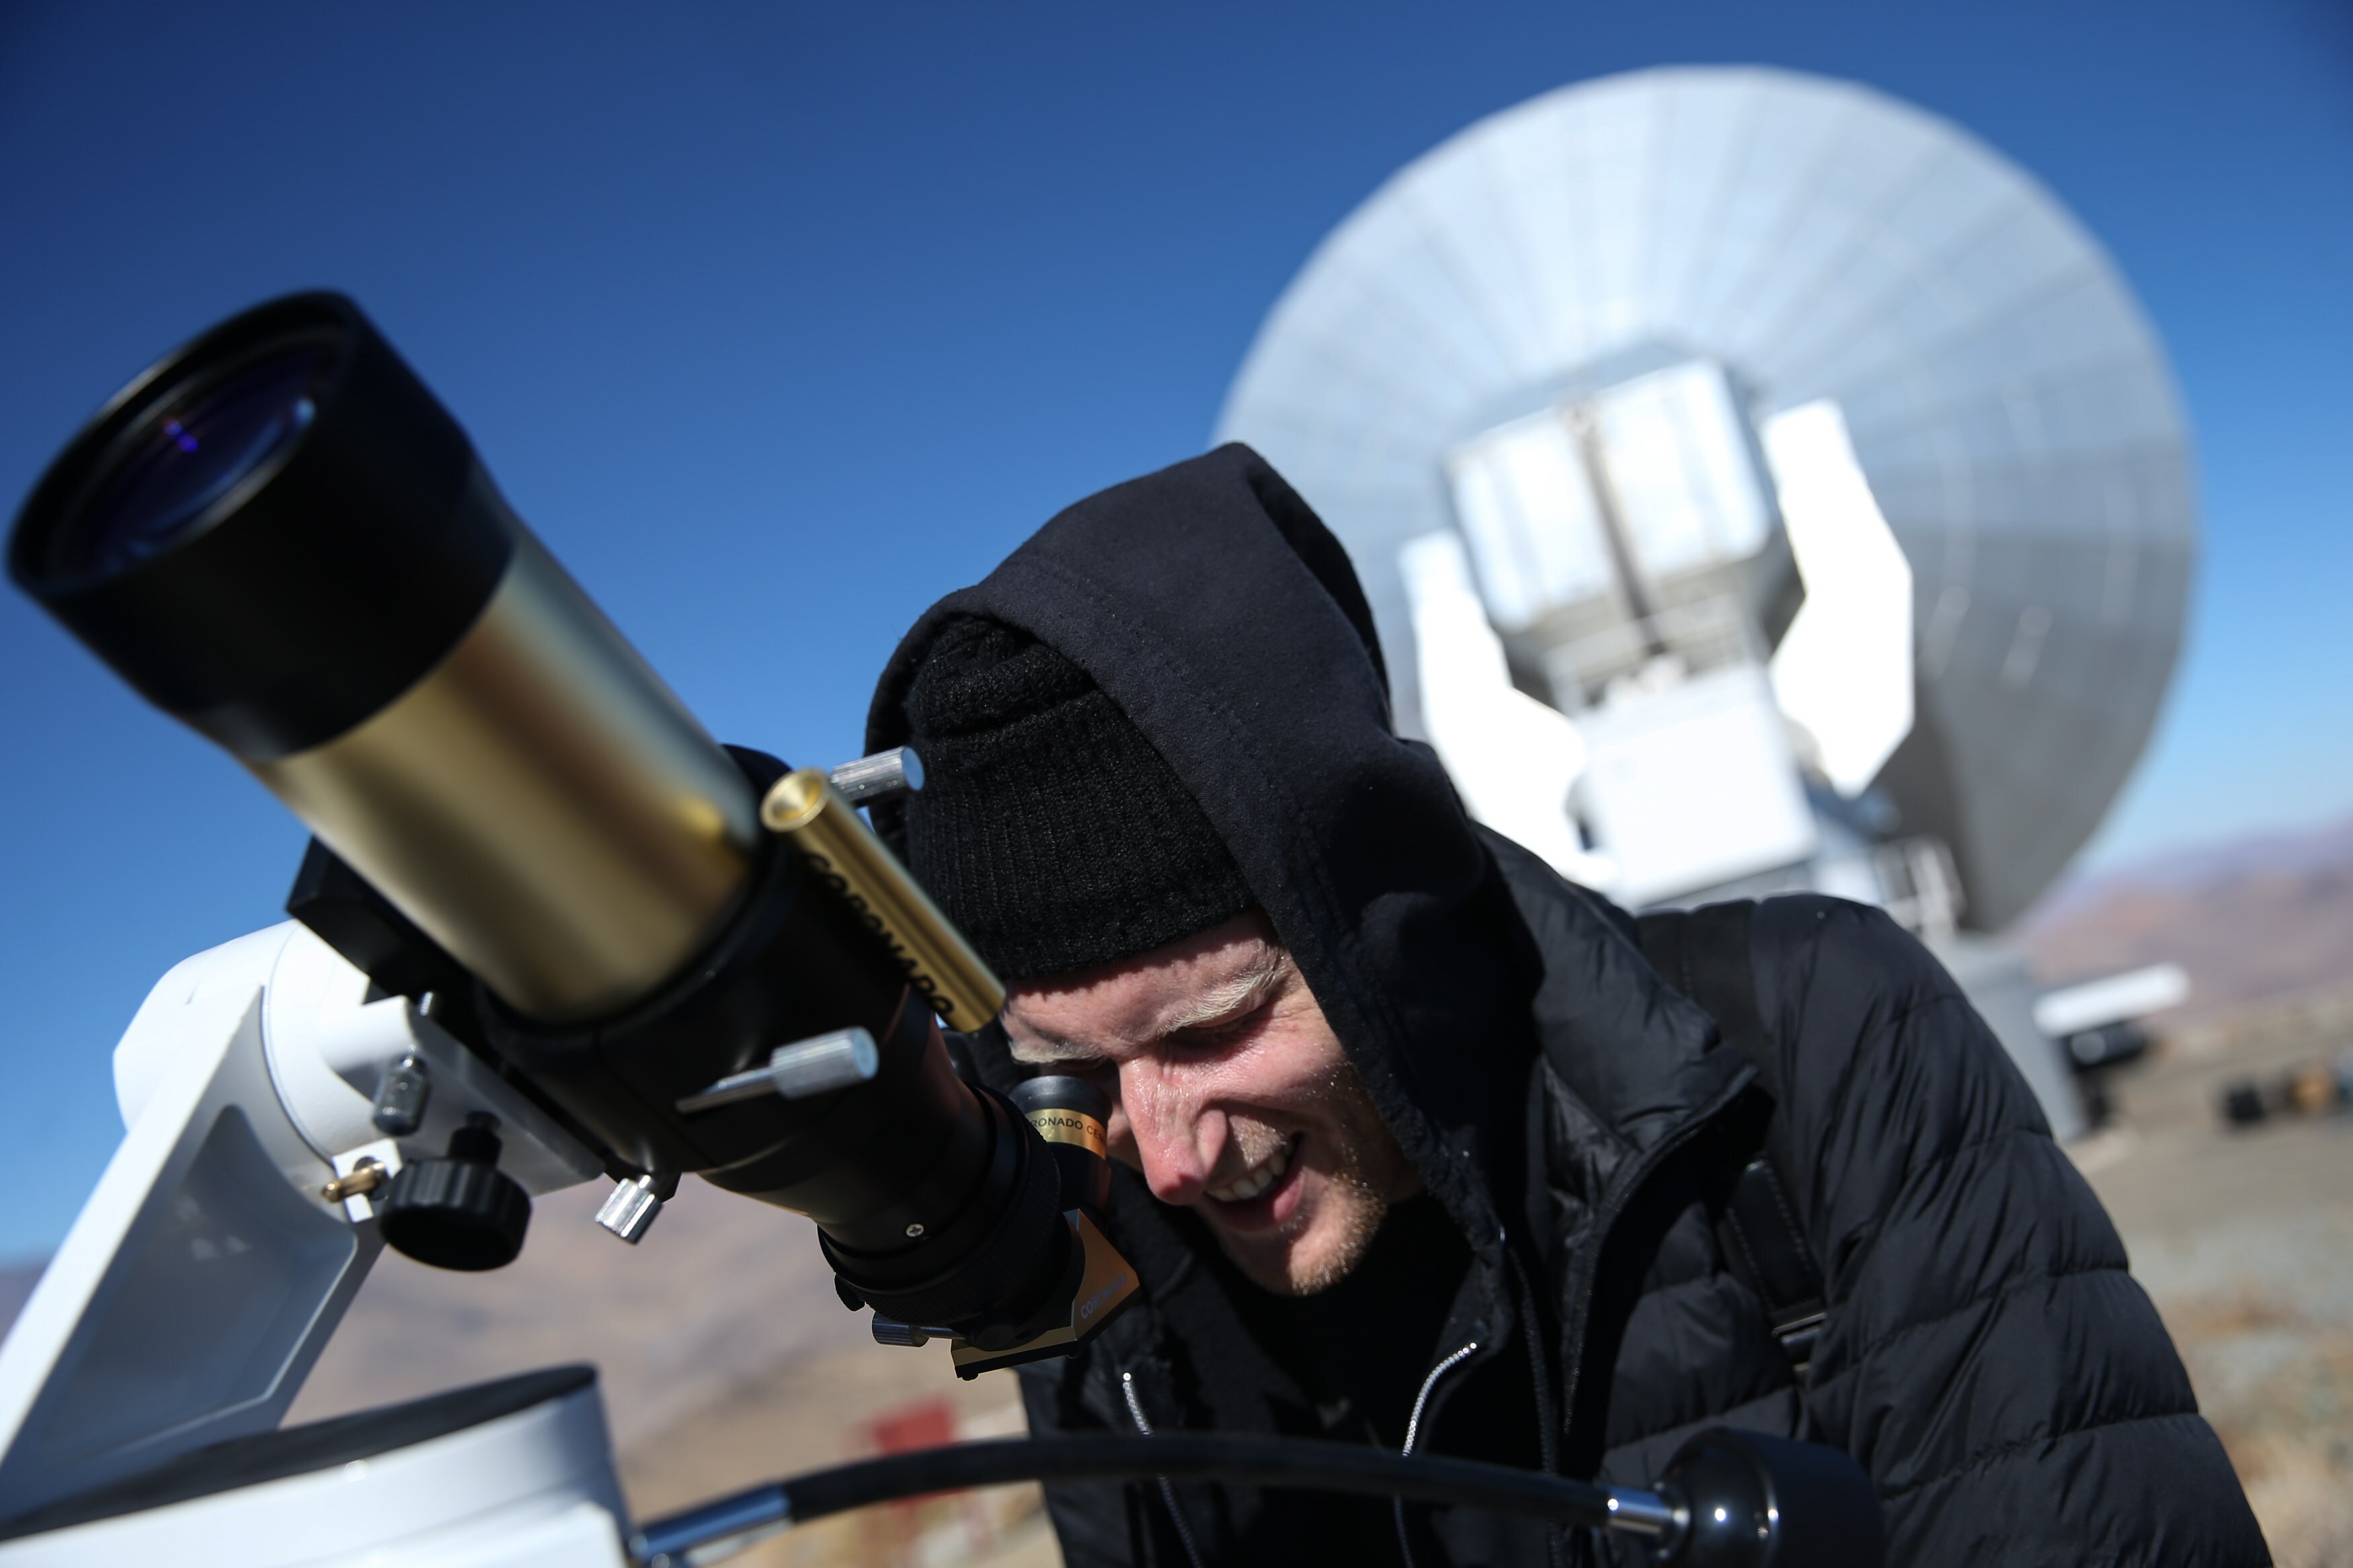 Un hombre observa el sol a través de un telescopio horas antes de que comience un eclipse solar total en una imagen de archivo. EFE/Alberto Valdés
